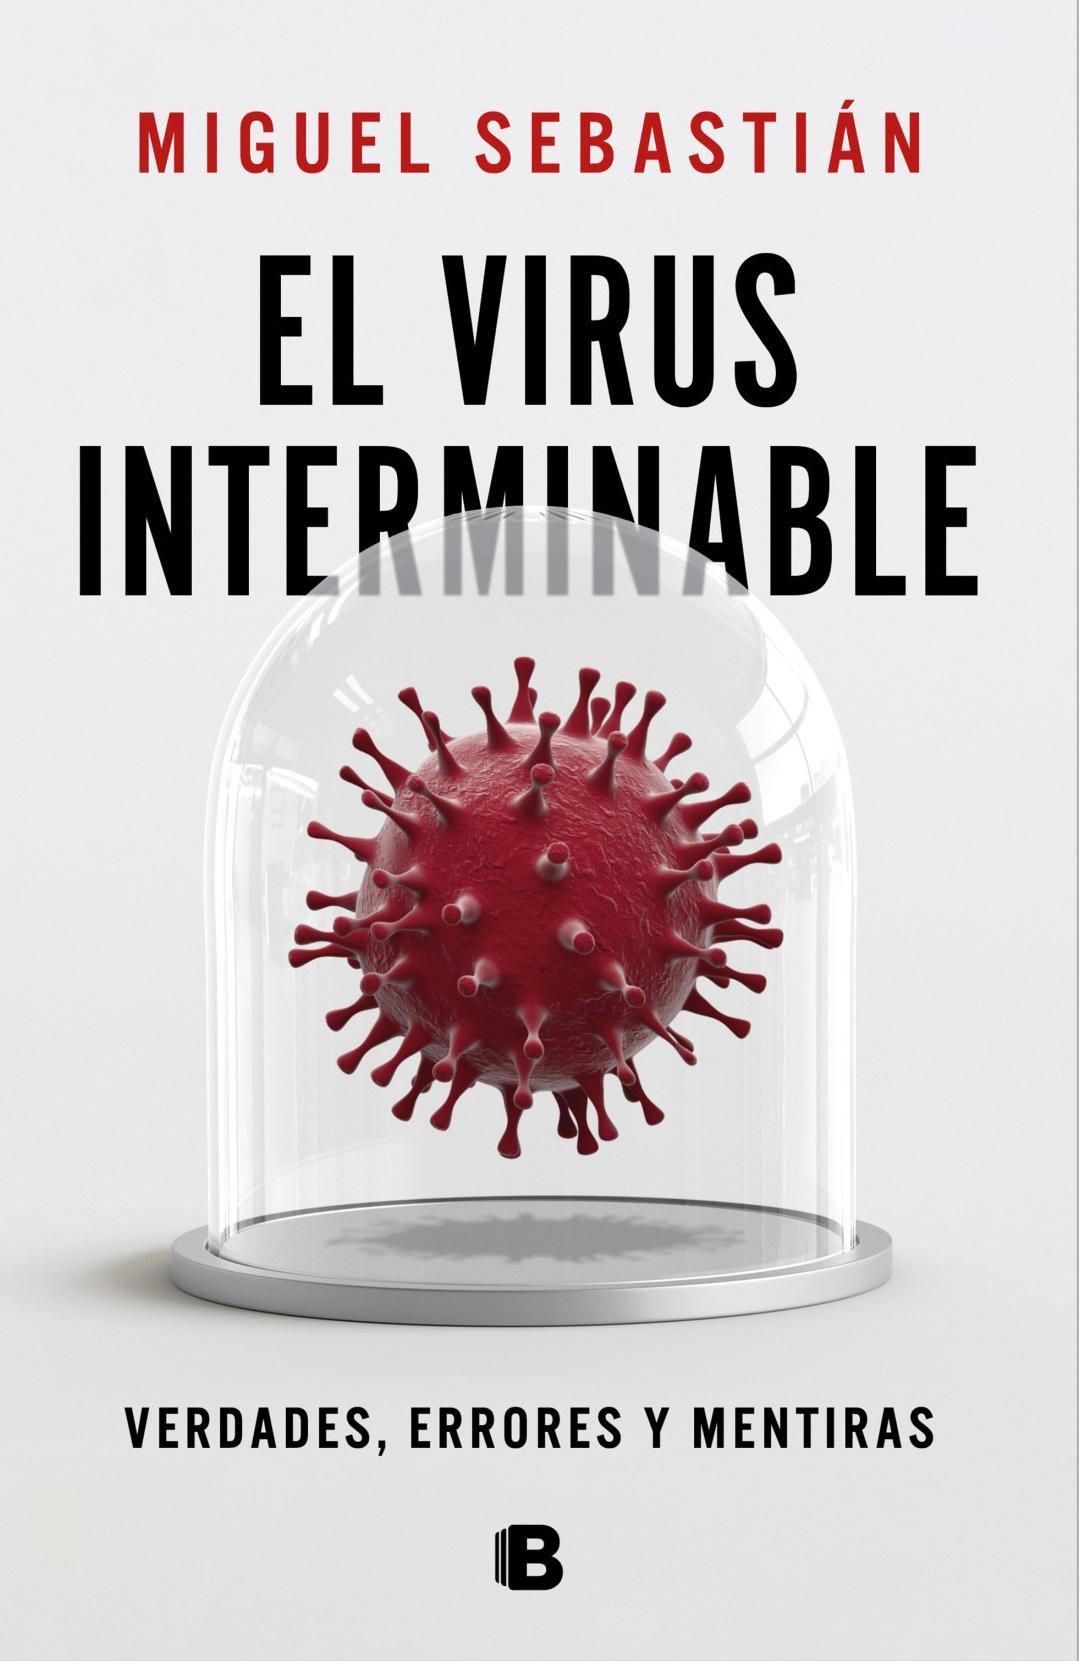 El Virus Interminable "Verdades, Errores y Mentiras". 